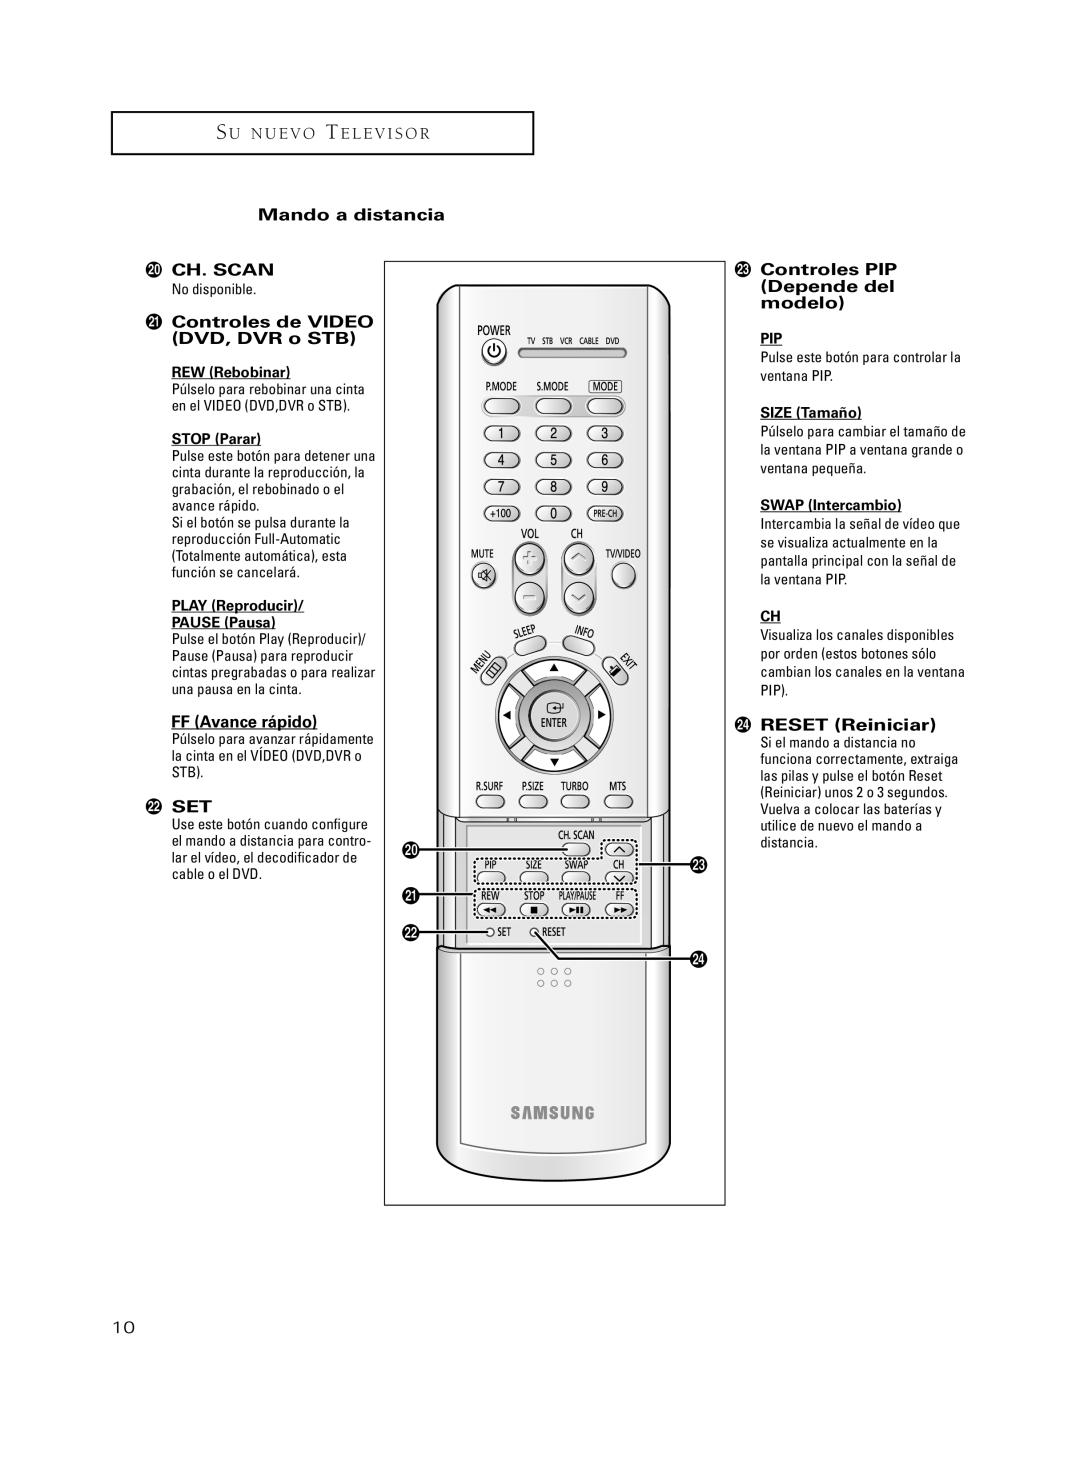 Samsung CL21S8MQ manual S U N U E V O T E L E V I S O R, Mando a distancia, ¿ Ch. Scan, ¸ Controles de VIDEO DVD, DVR o STB 